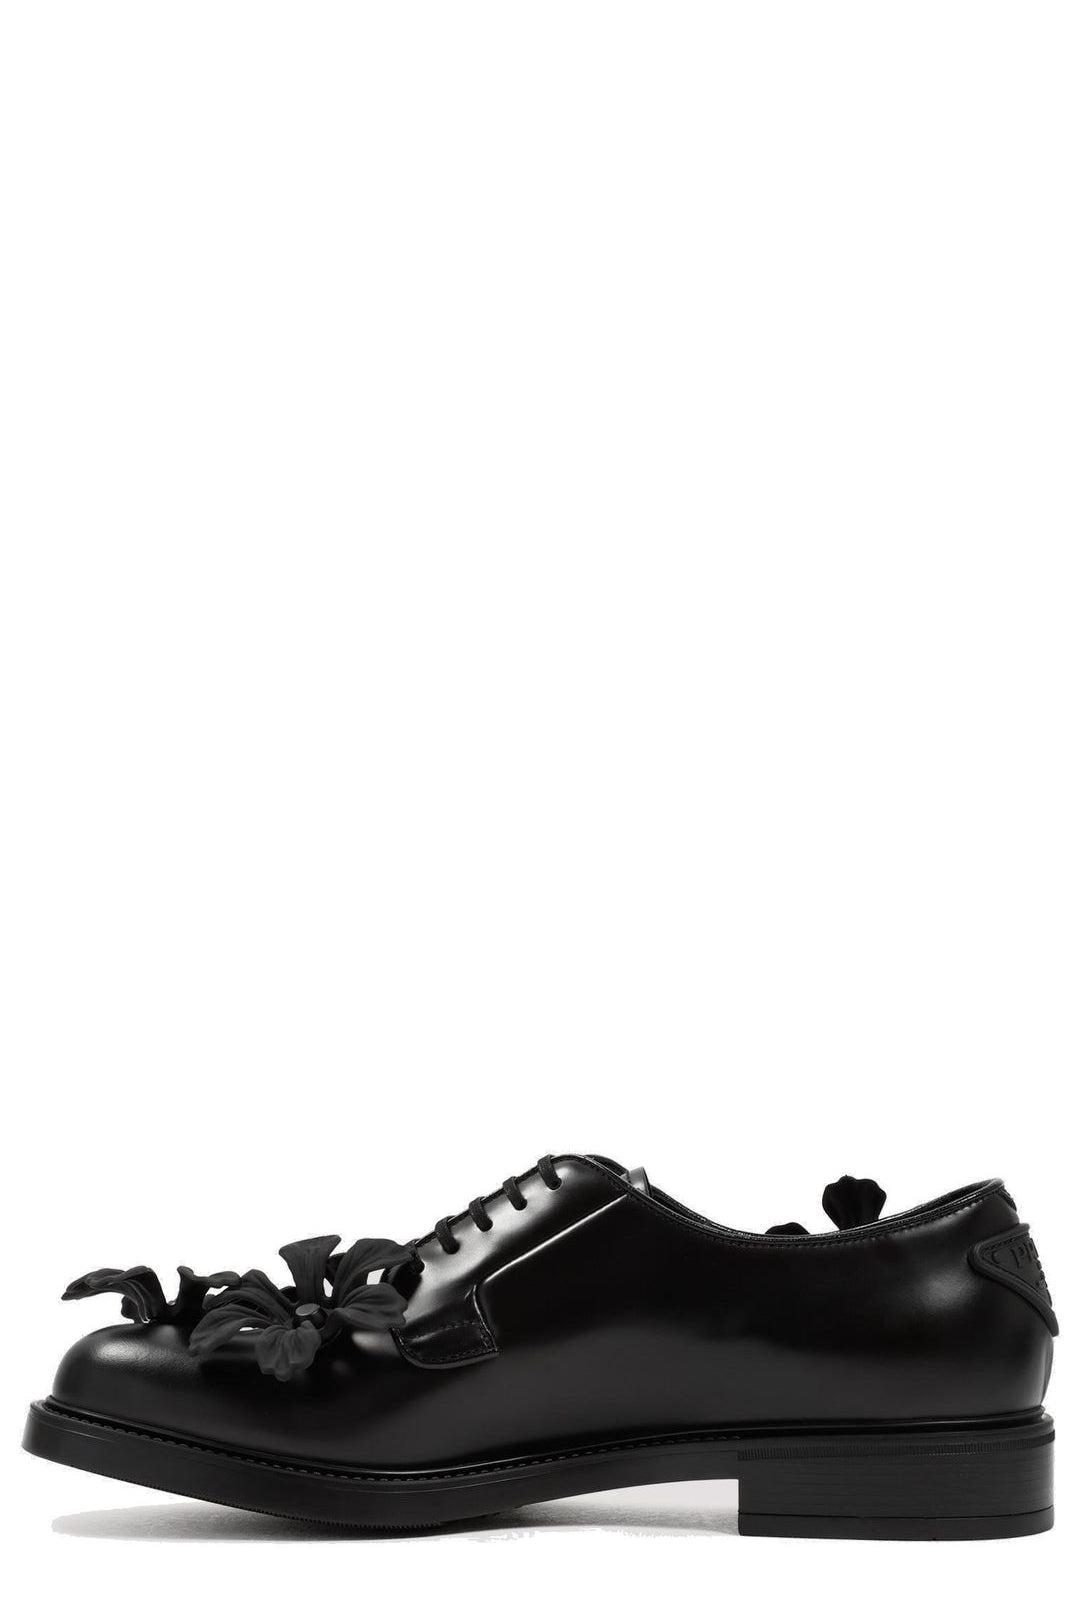 Prada Floral Appliqué Derby Shoes in Black for Men | Lyst